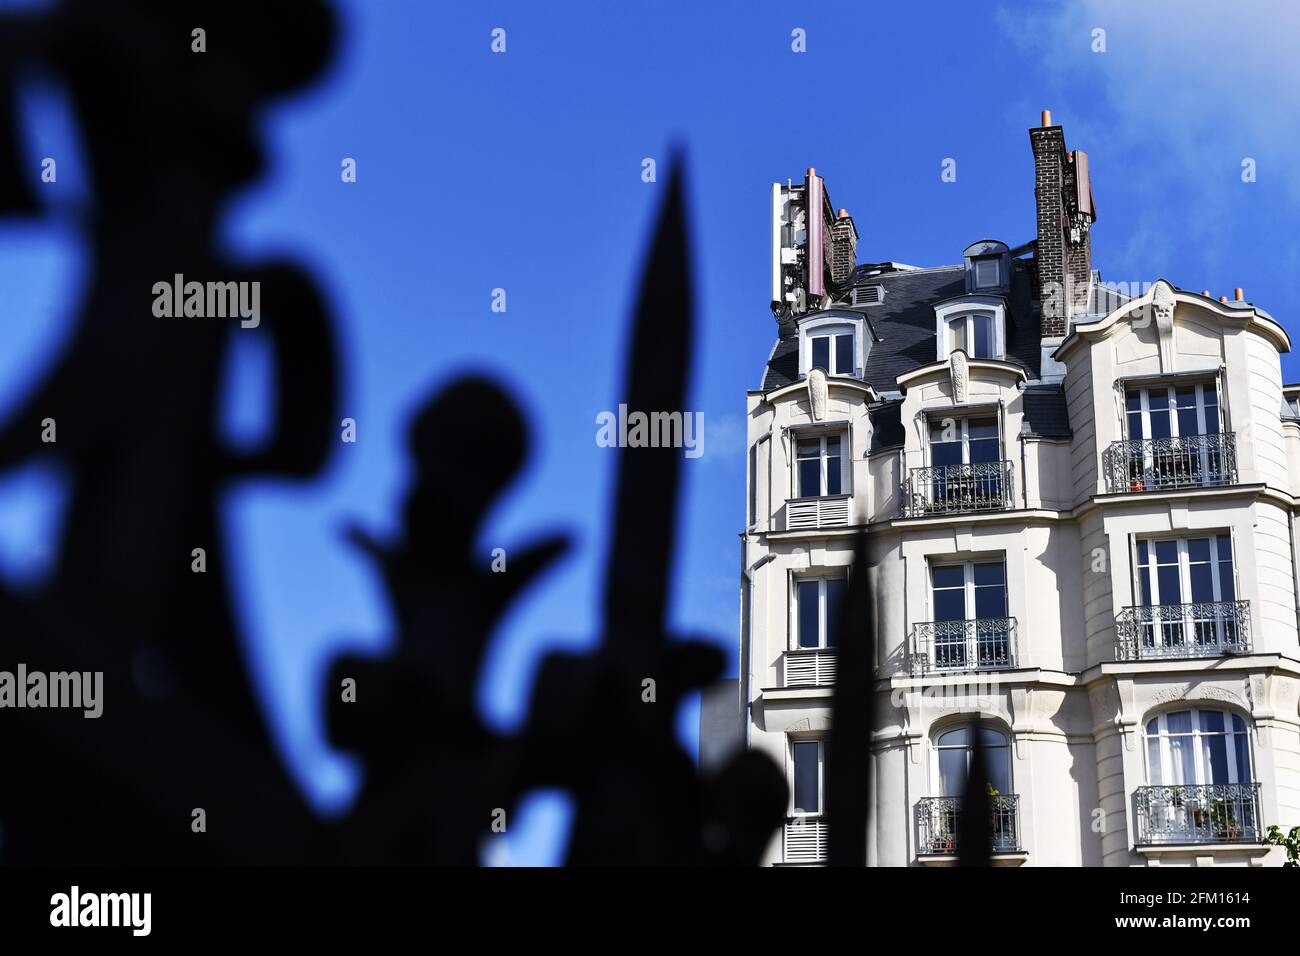 Relais antenne sur un toit - Paris - France Banque D'Images